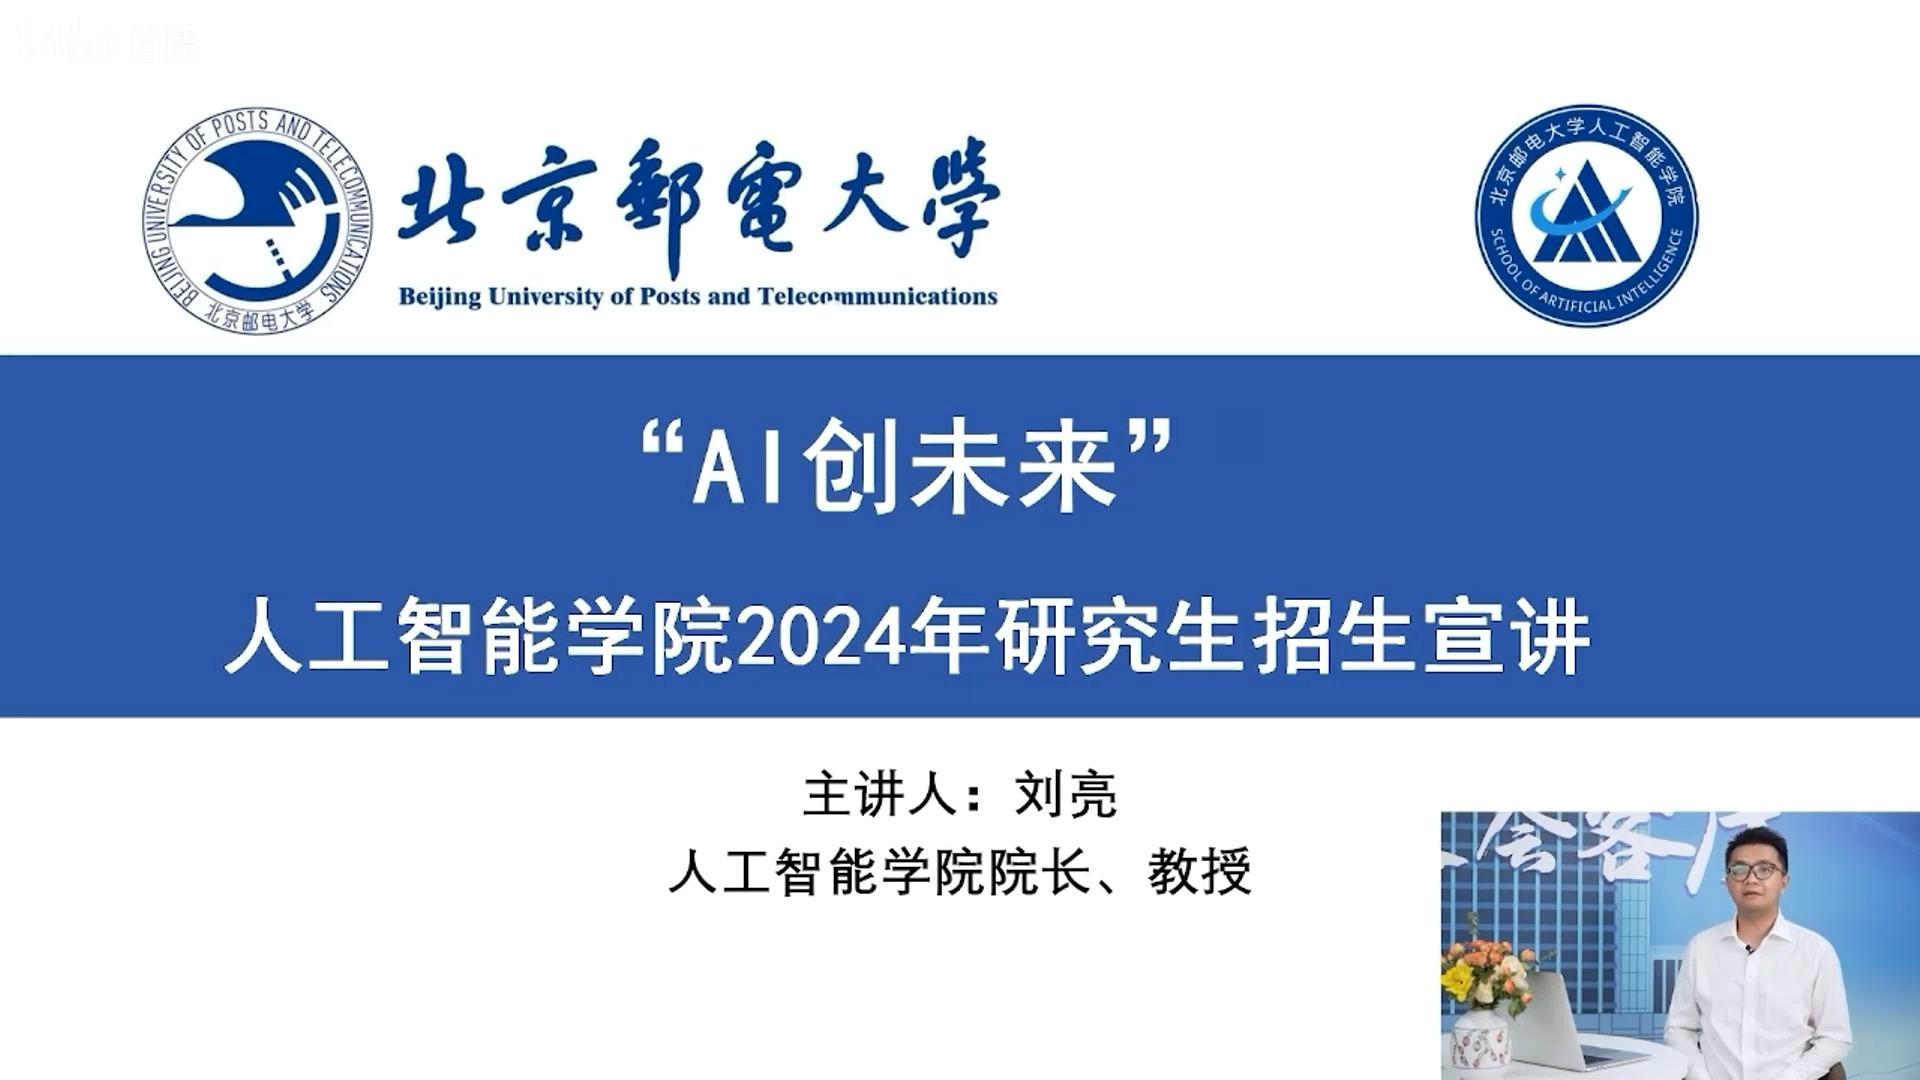 北京邮电大学人工智能学院未来什么时候招收研究生? 